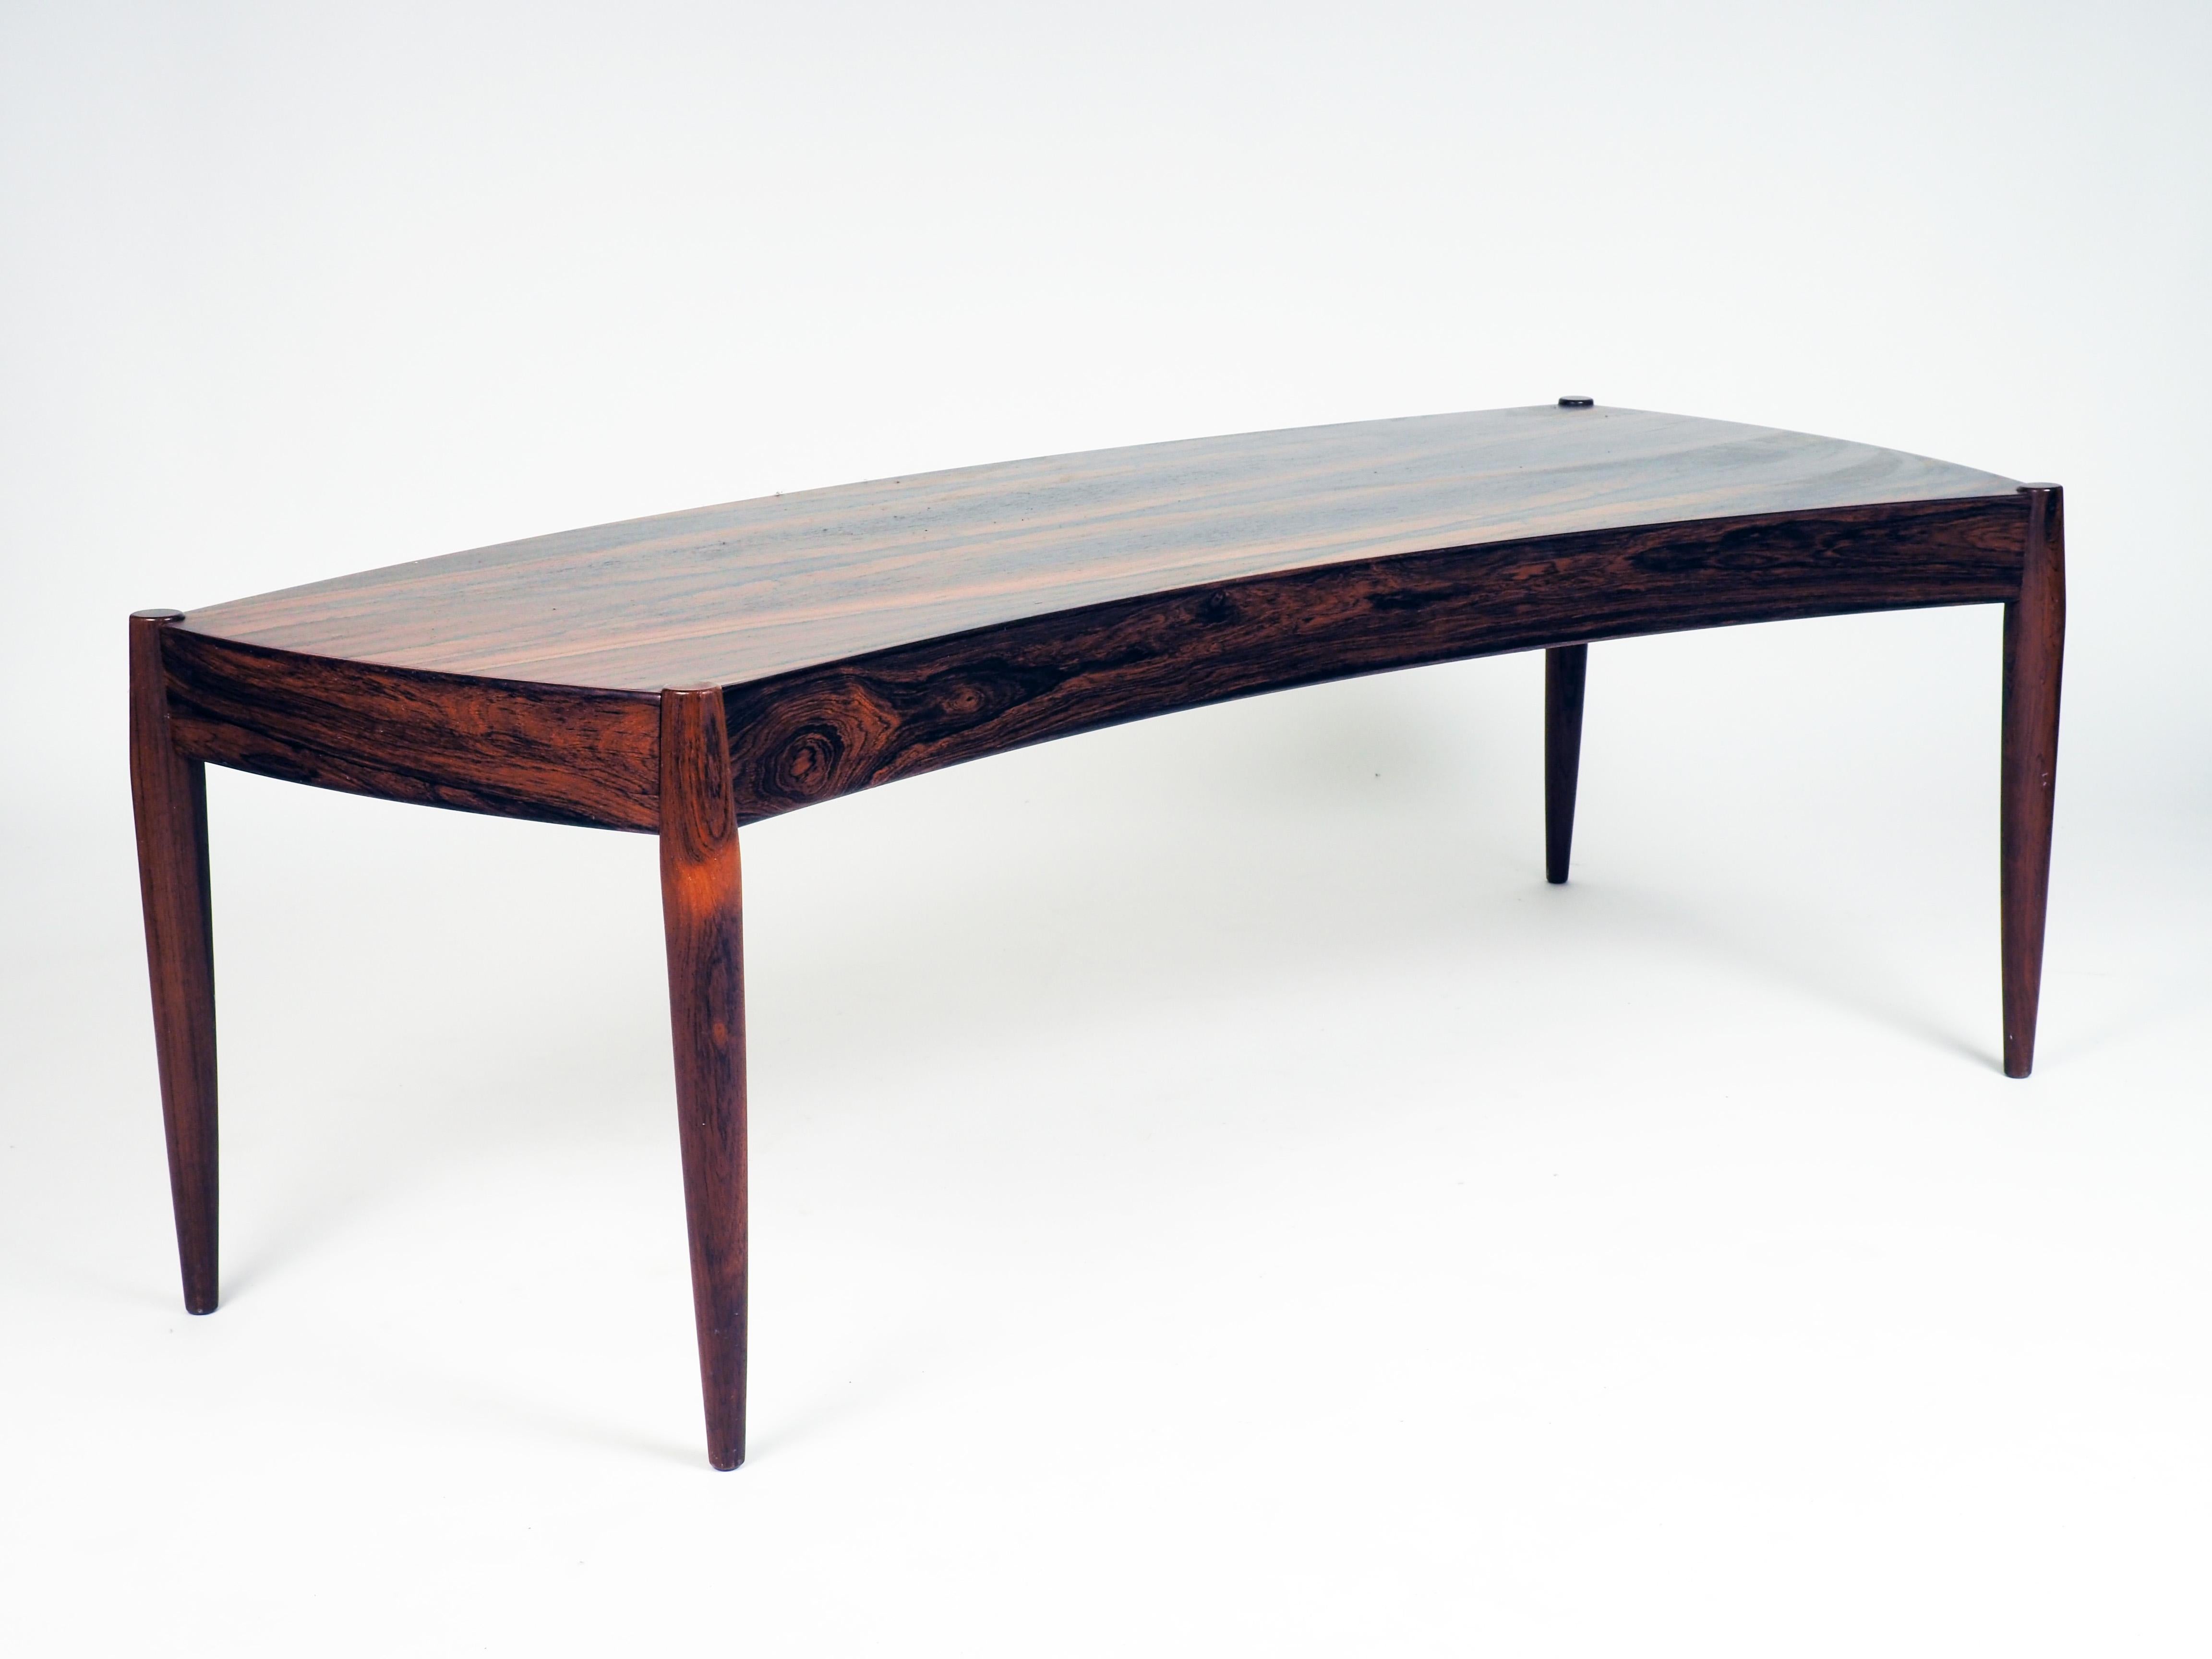 Table basse en forme pliée. Fabriqué en bois de rose par Trensum, Suède. La table a été conçue par l'architecte danois Johannes Andersen.